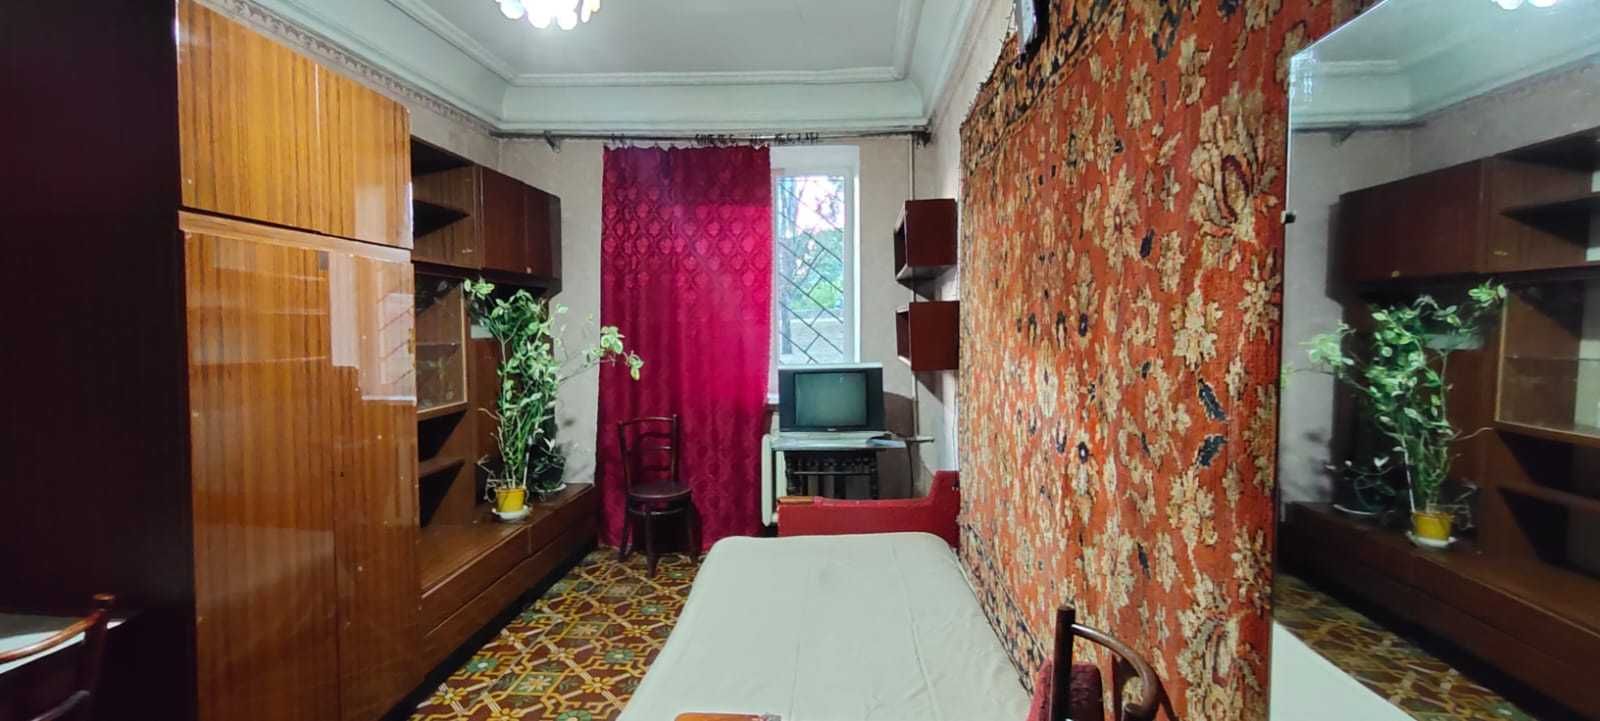 Сдам 2ух комнатную квартиру в сталинке на Селекционном.